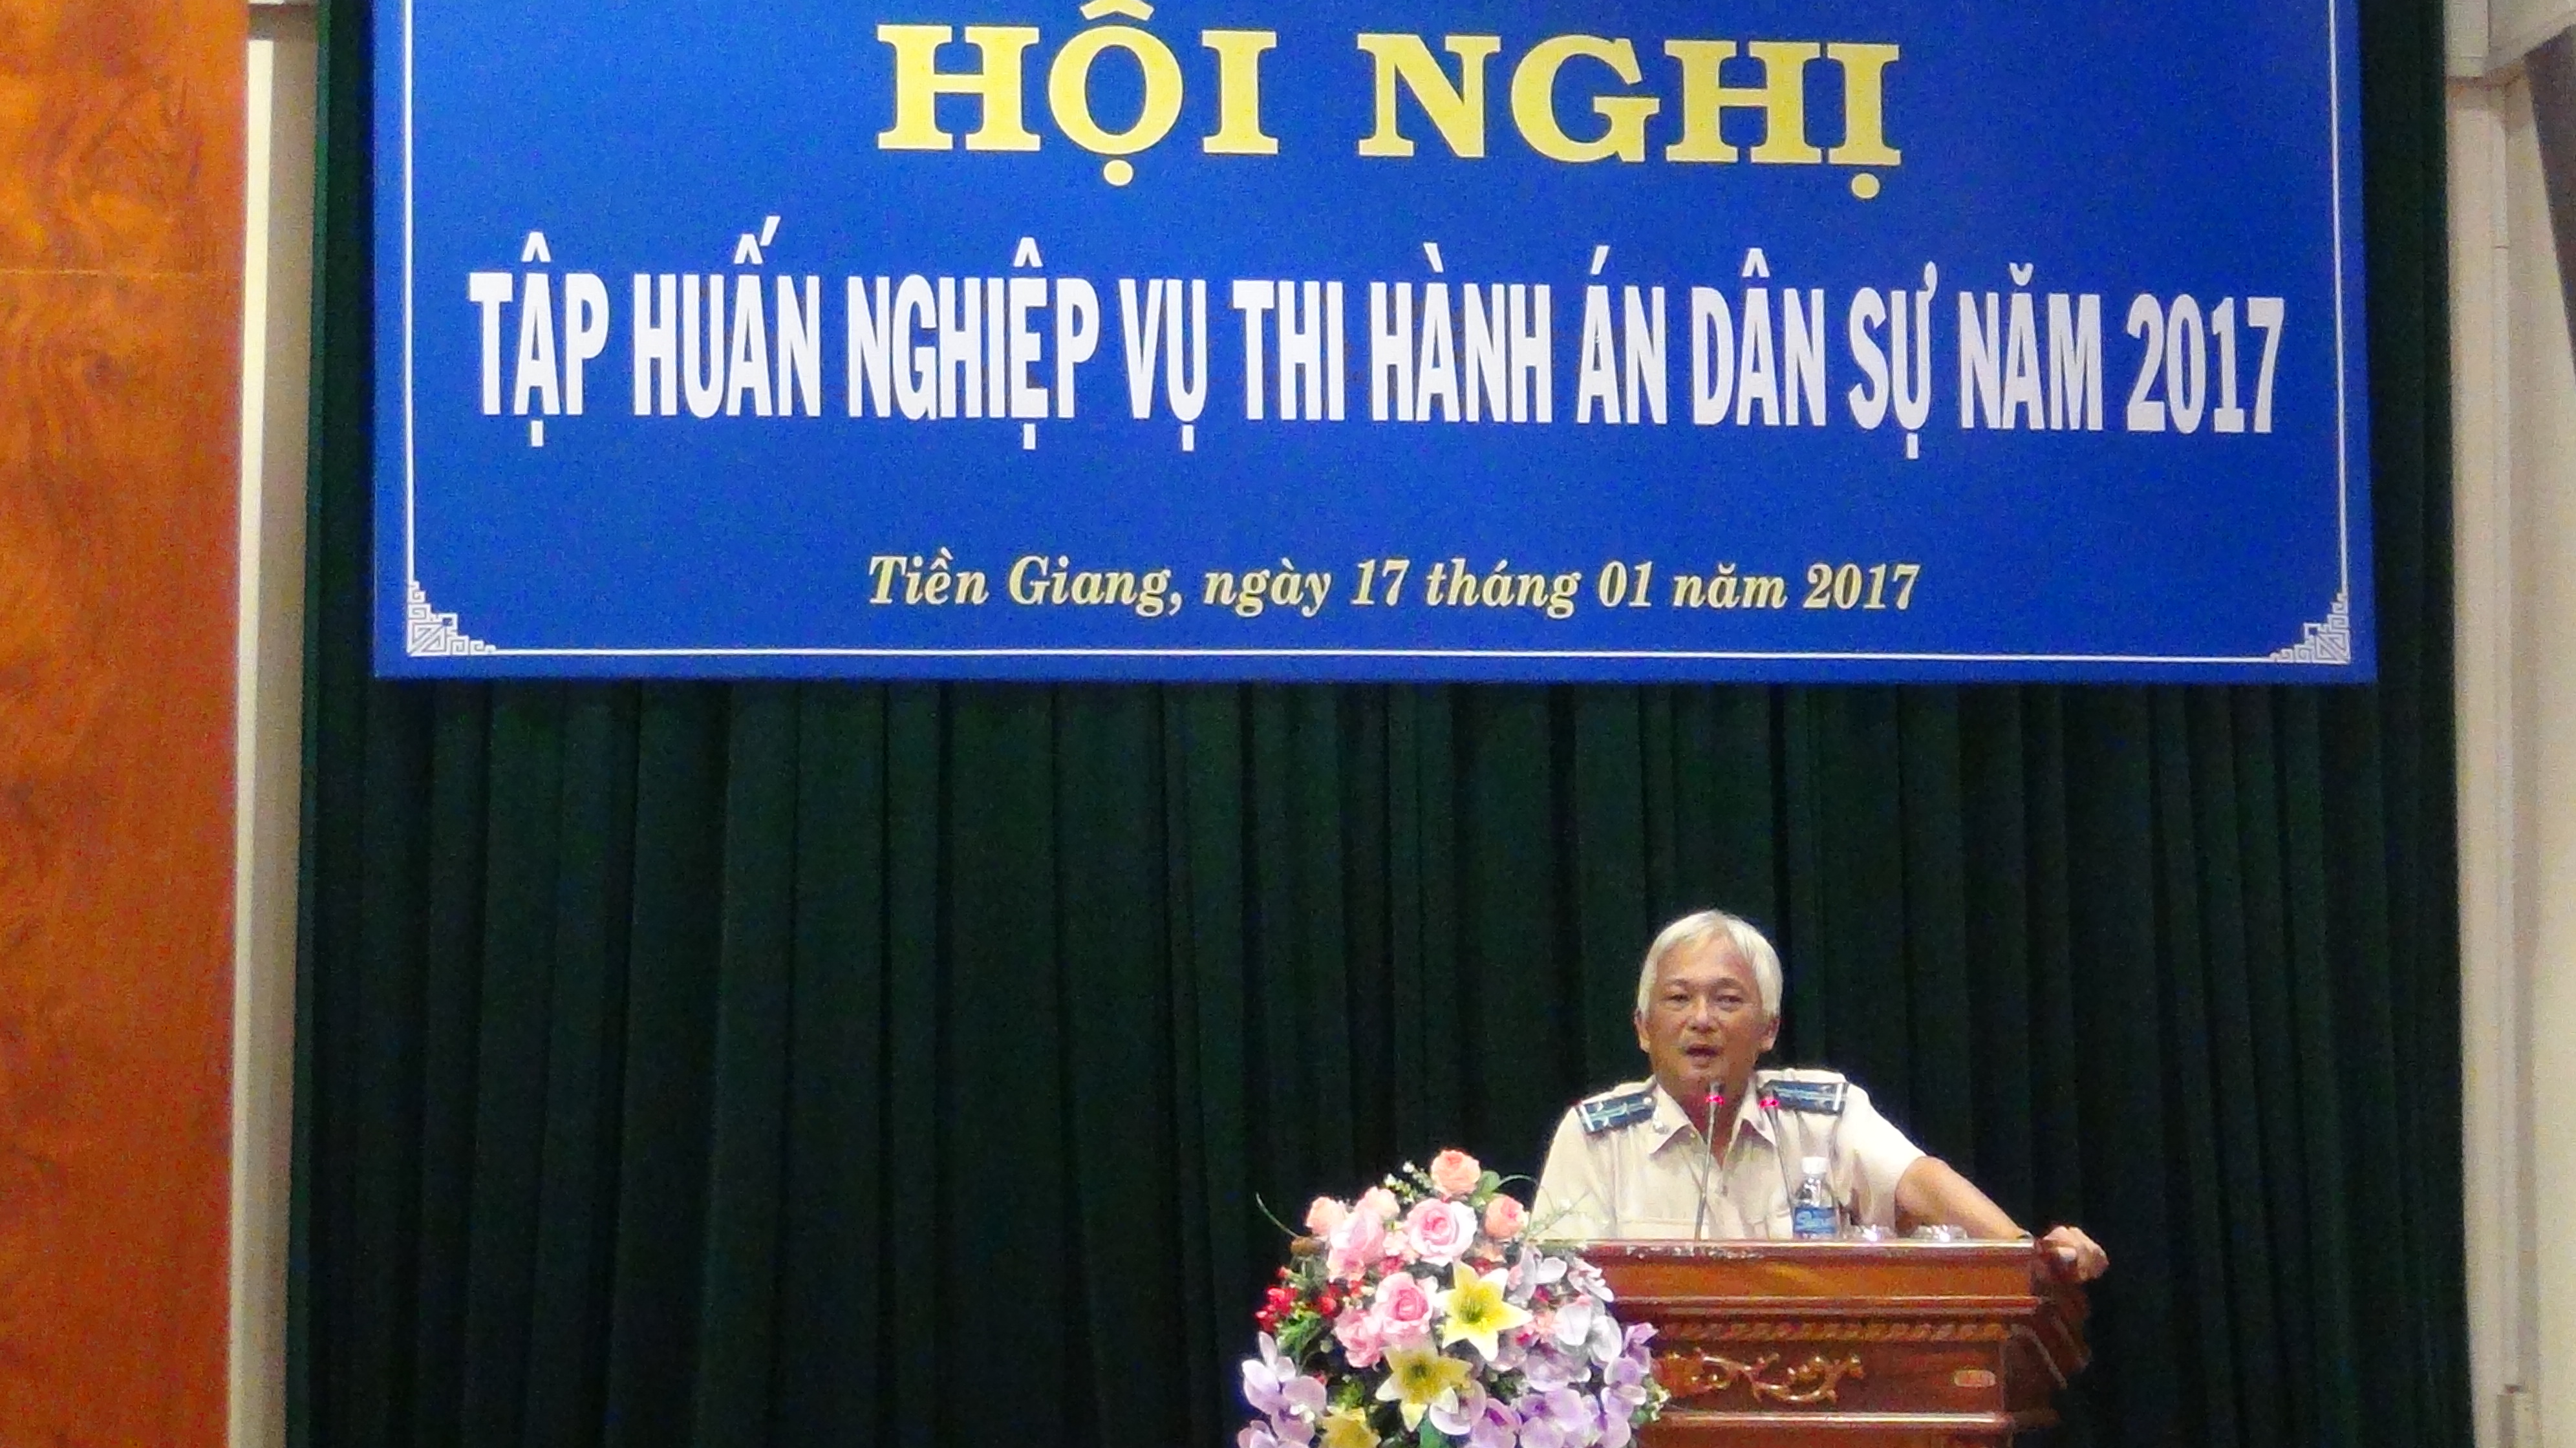 Cục Thi hành án dân sự tỉnh Tiền Giang tổ chức hội nghị tập huấn nghiệp vụ thi hành án dân sự năm 2017